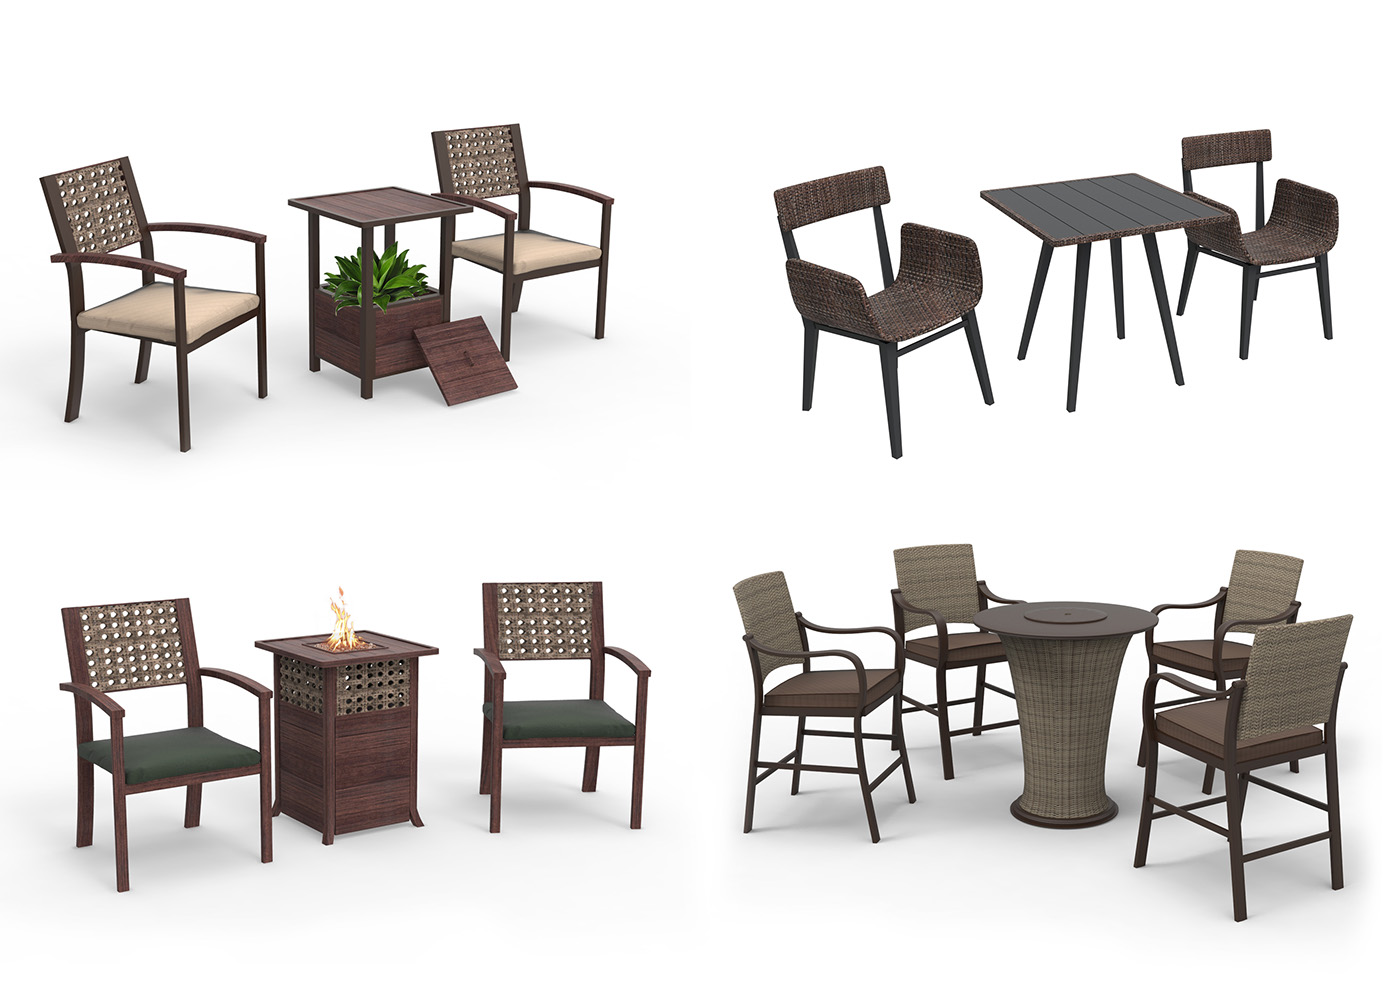 design industrial design  product design  wood furniture outdoor furniture Fire Table sample market Modern Design